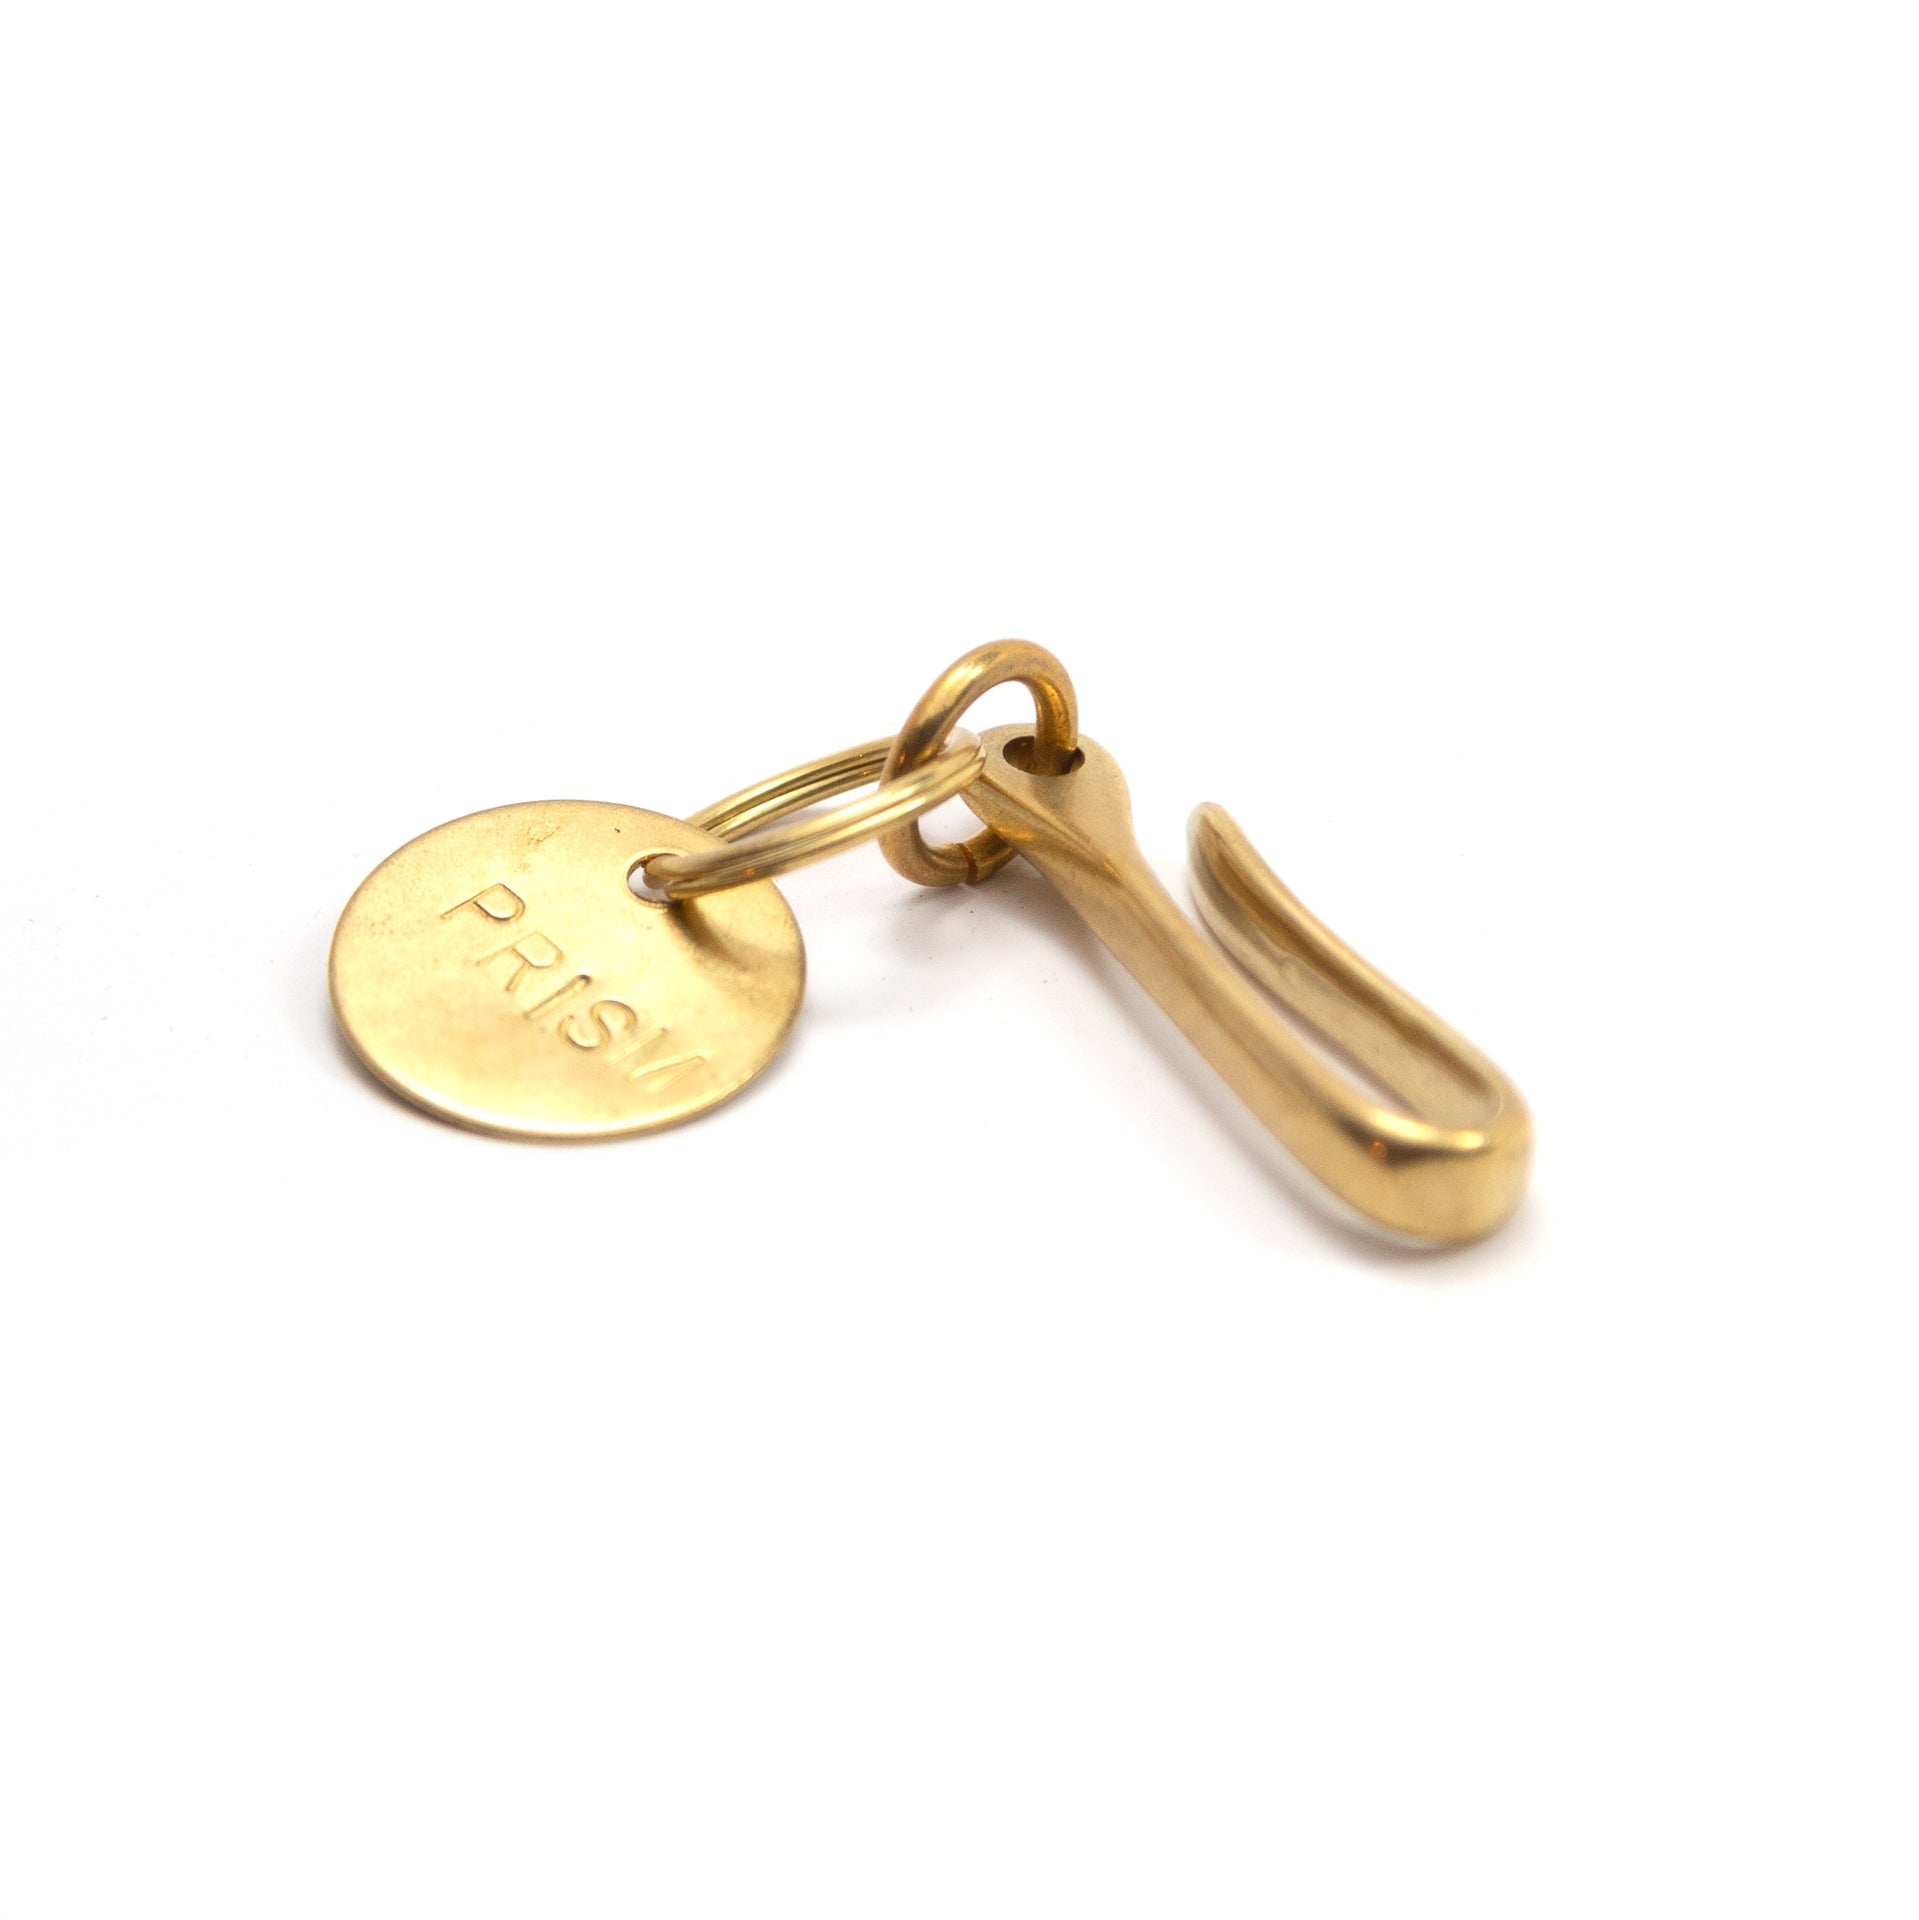 Keychain Hook Clip Brass Keychain Hook Key Hook Screw Lock